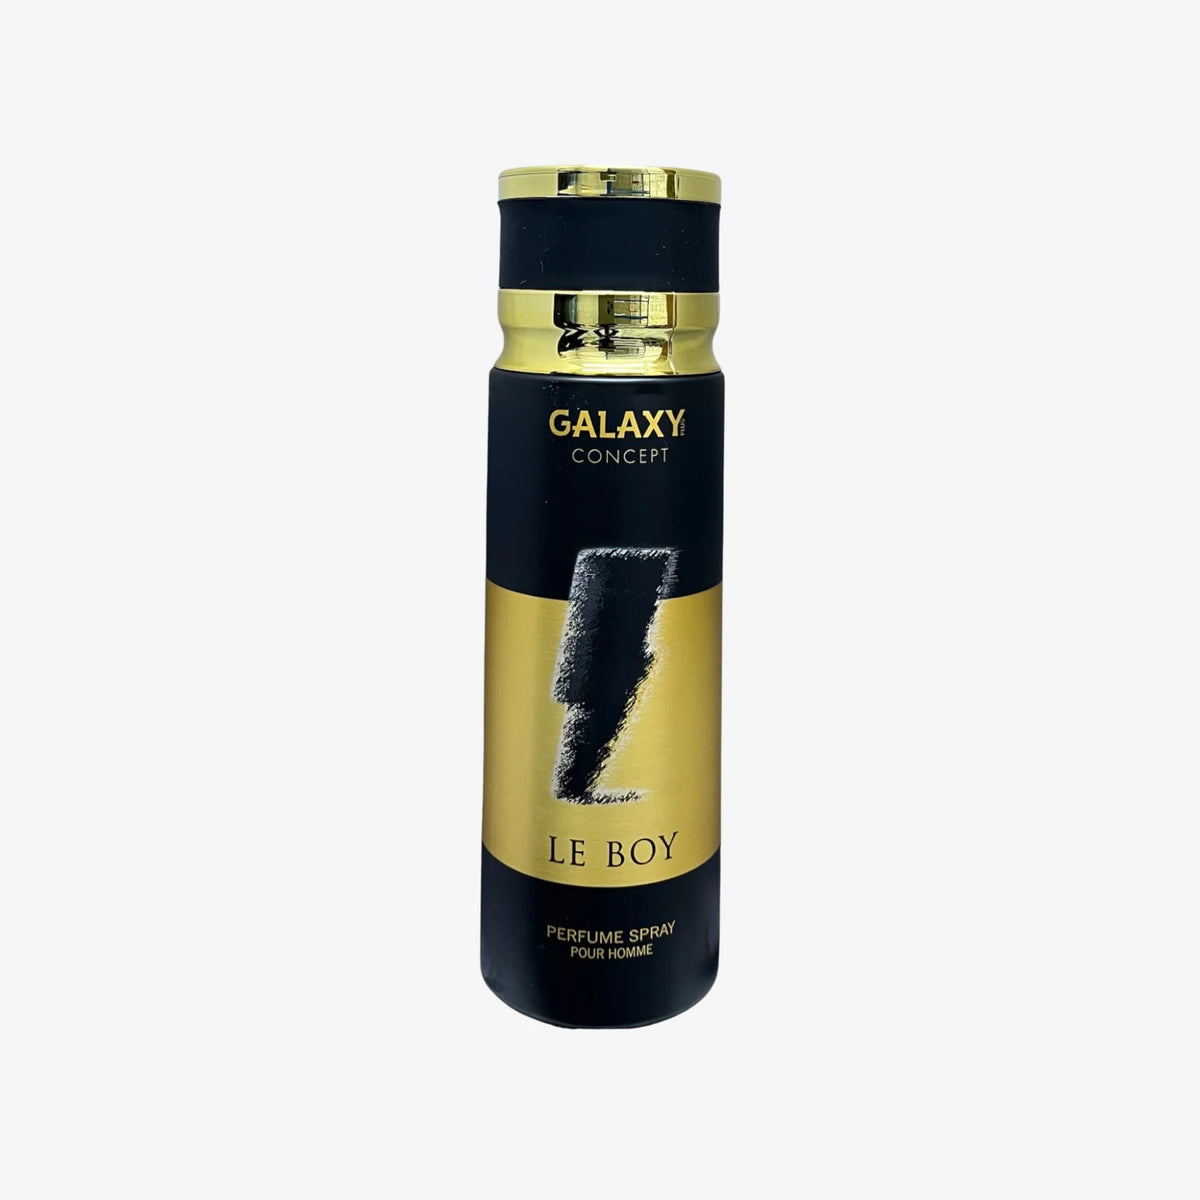 Le BoyBody Spray Galaxy Concept